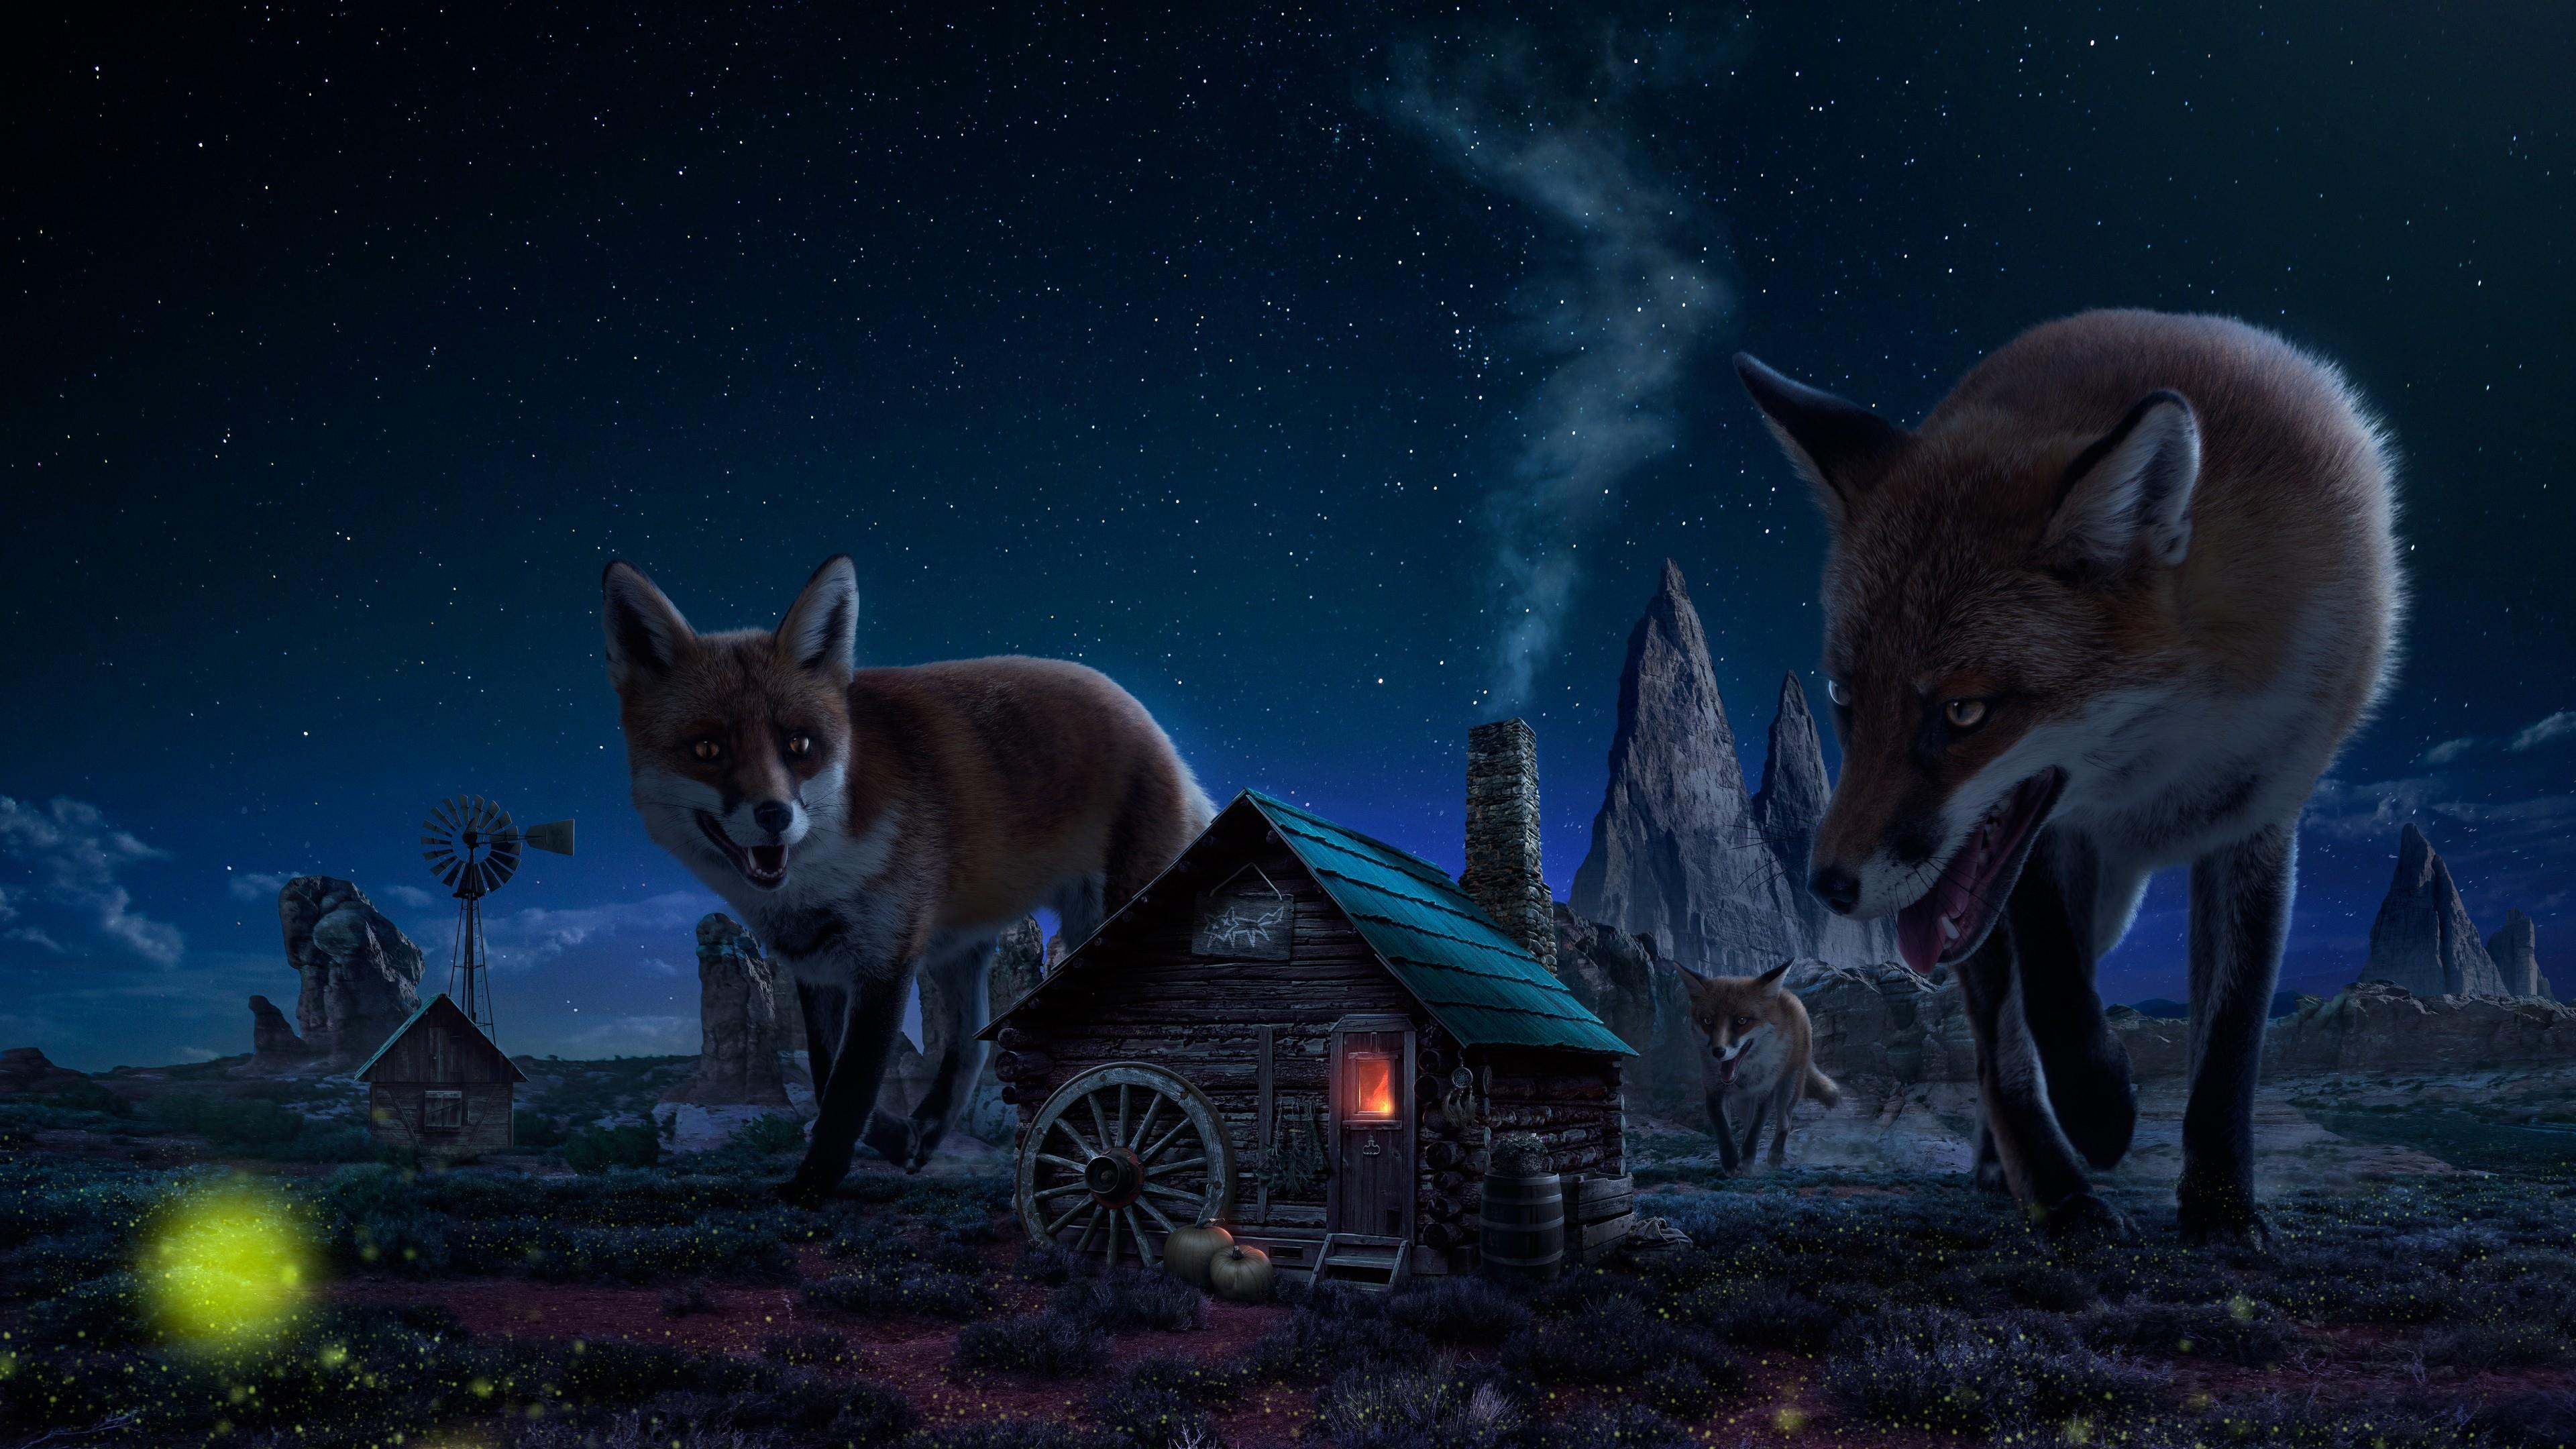 Giant Red Fox In A Little Village Art 4K UltraHD Wallpaper